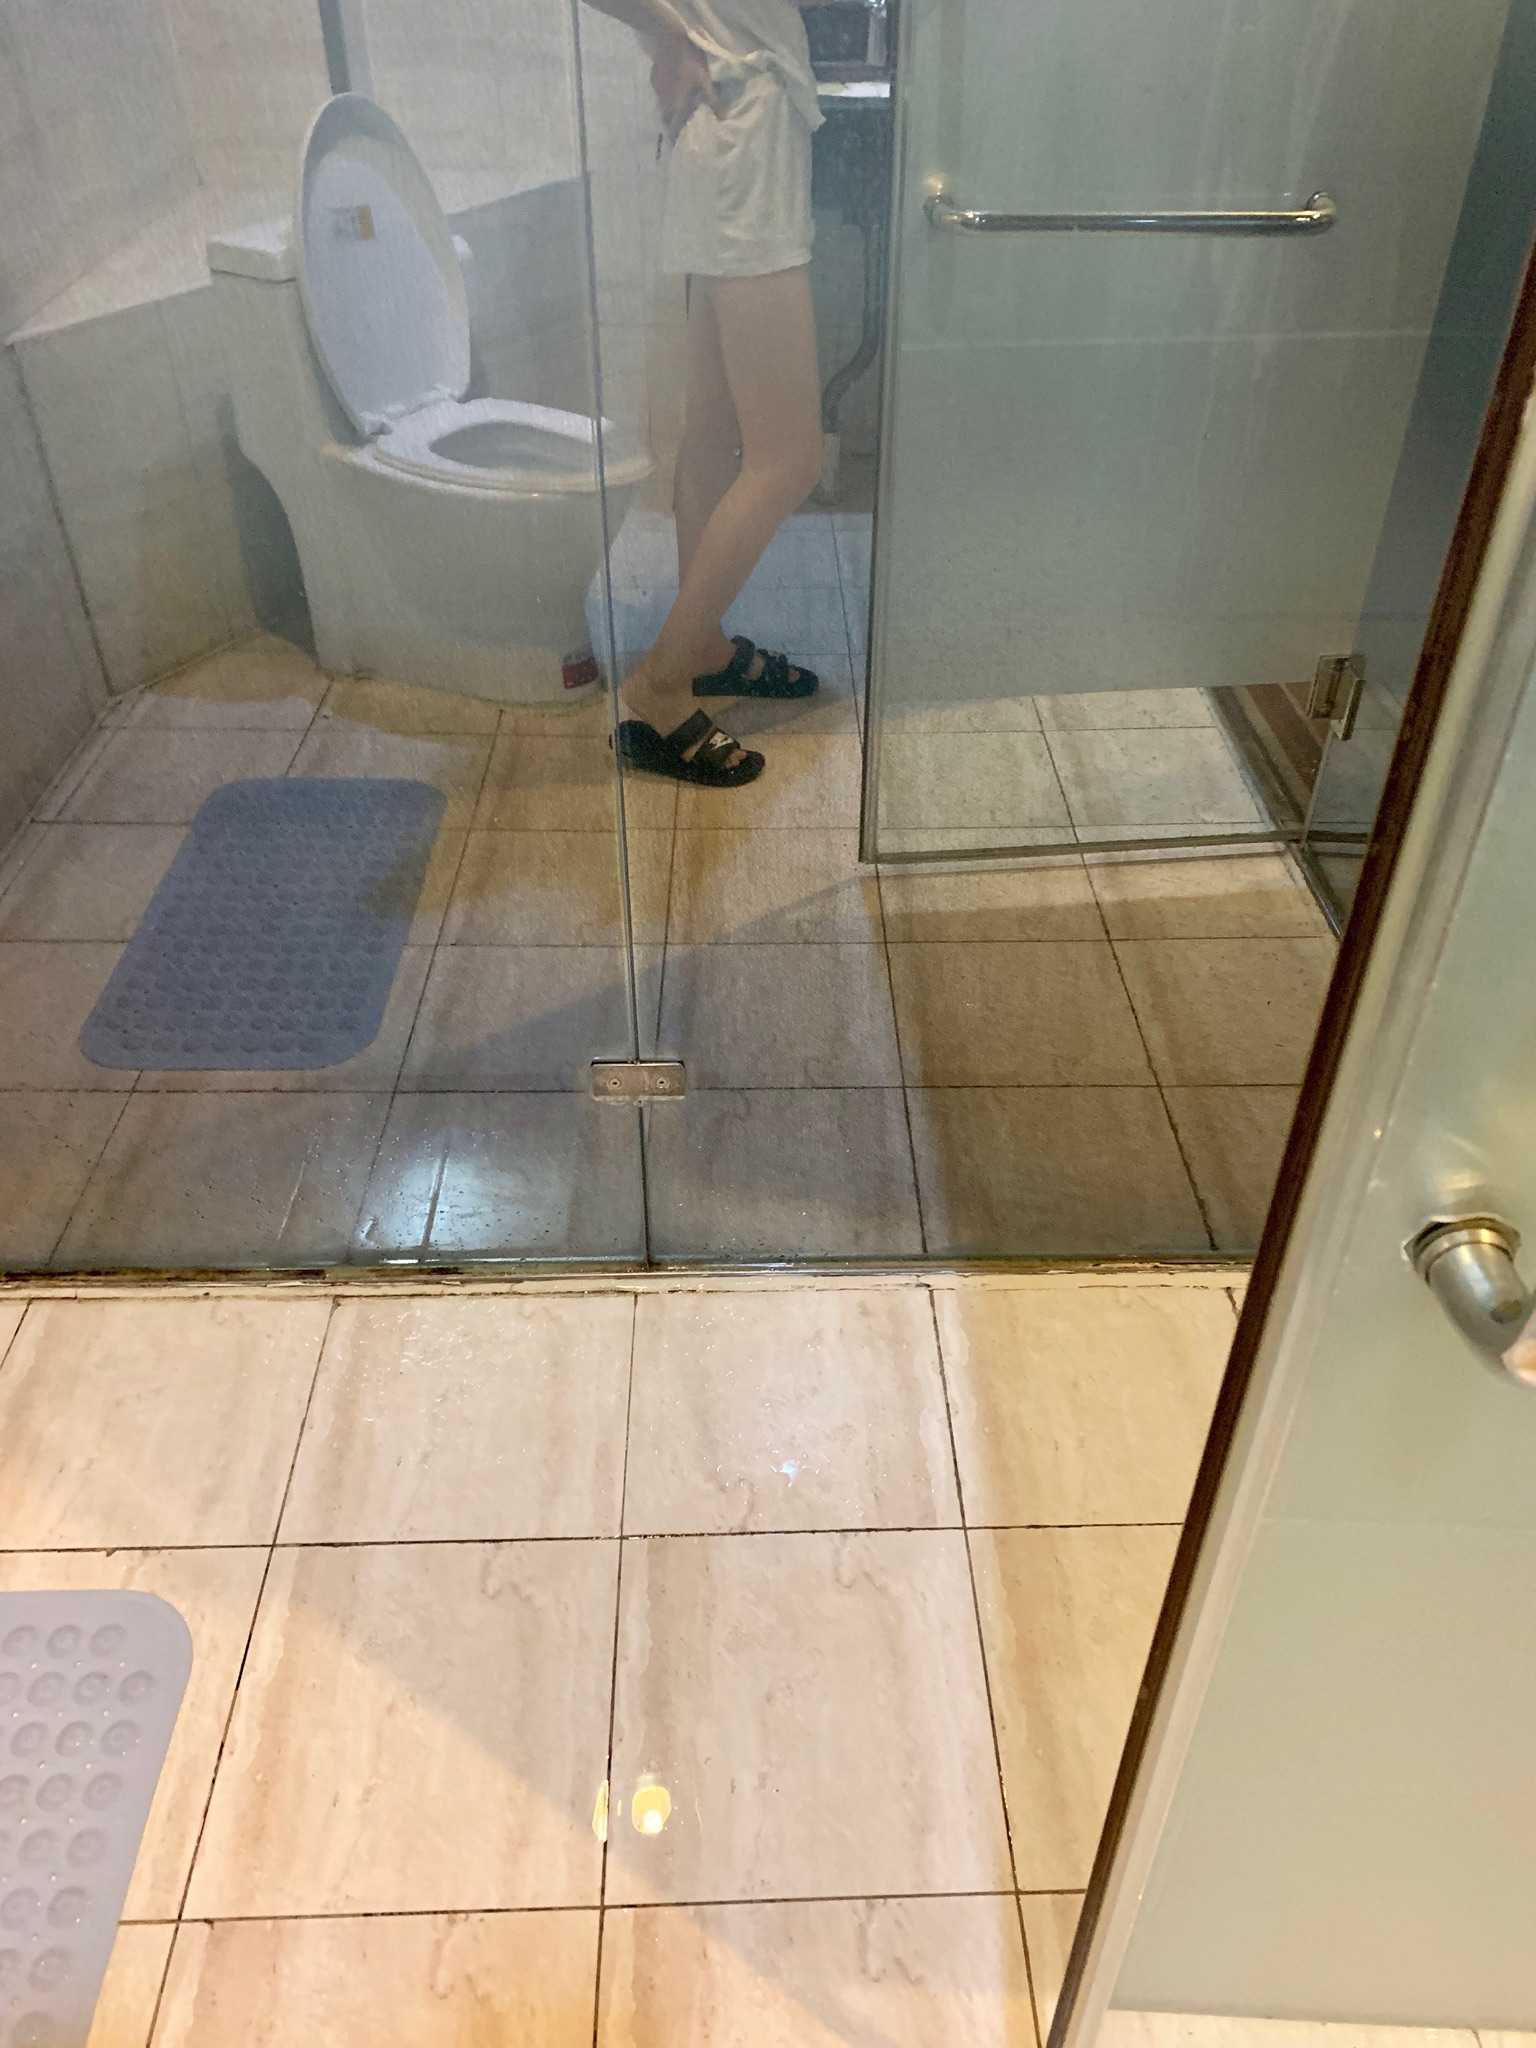 酒店厕所拍的哈哈哈到哪都要拍照 我要上视频 猜猜我有多高!